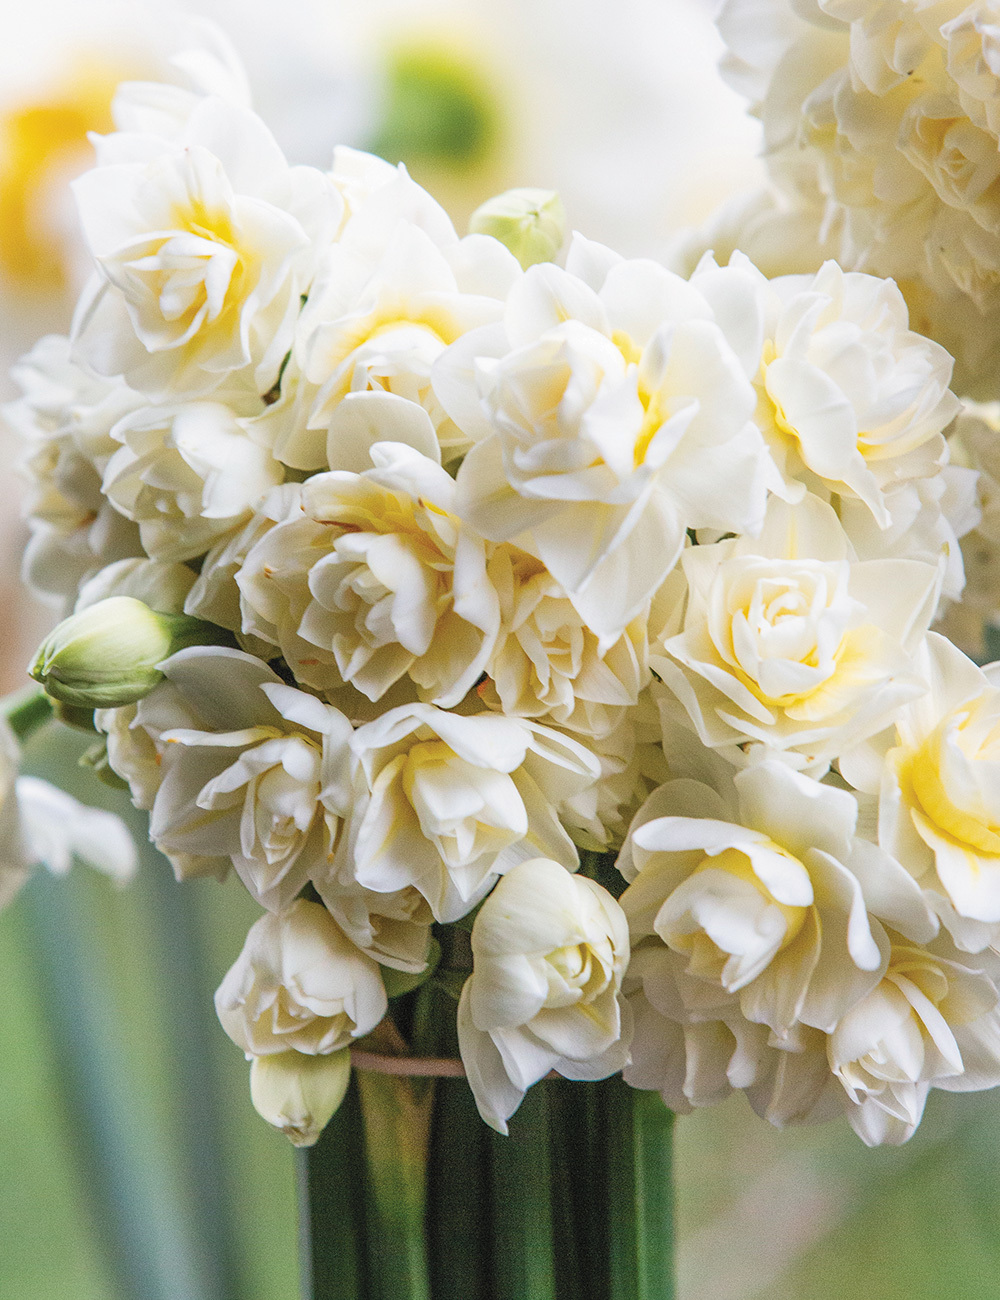 BULK BUY Scented Daffodil Erlicheer